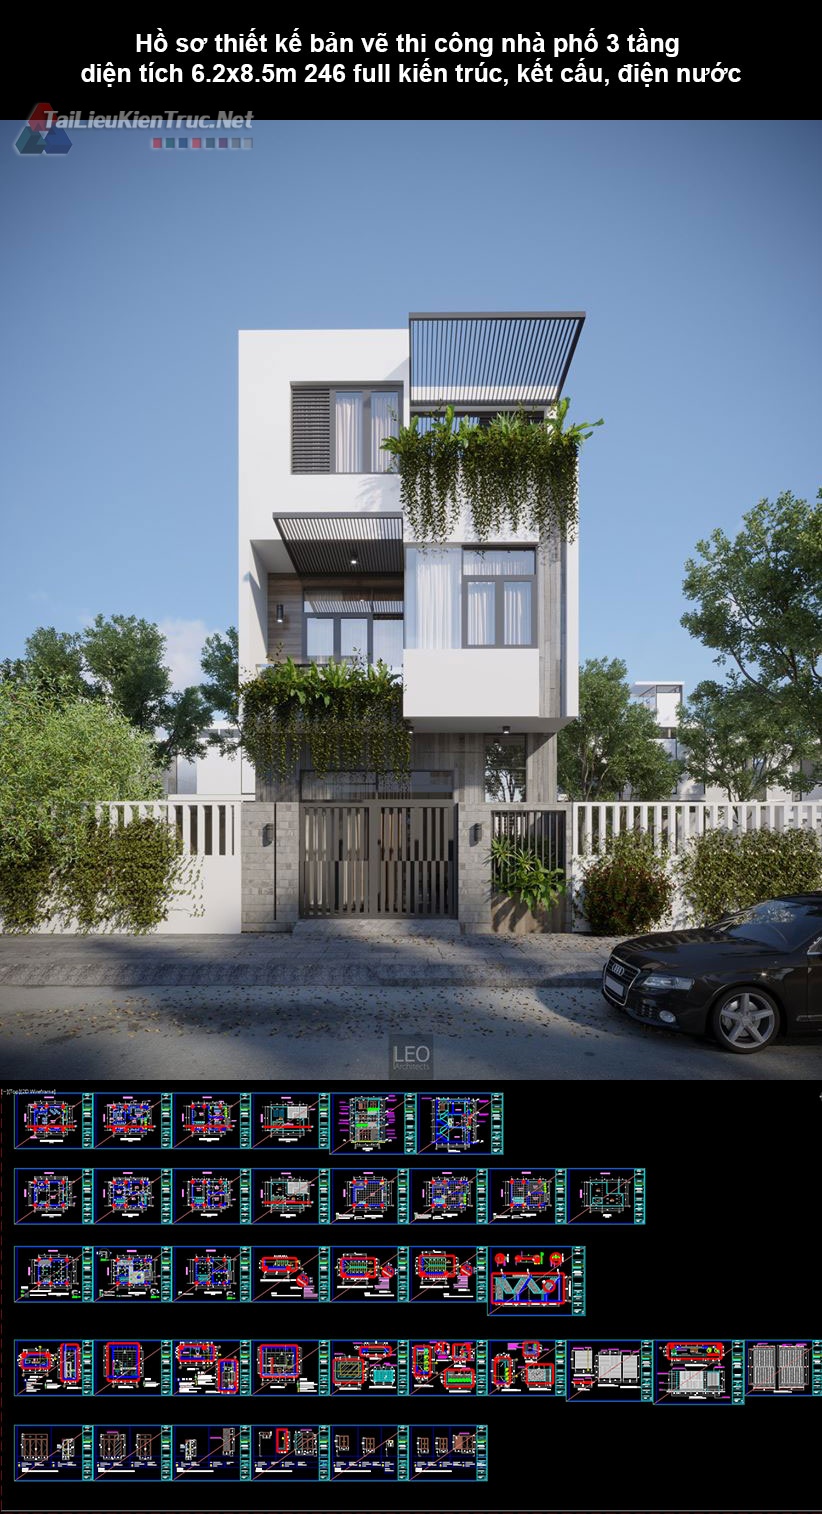 Hồ sơ thiết kế bản vẽ thi công nhà phố 3 tầng diện tích 6.2x8.5m 246 full kiến trúc, kết cấu, điện nước